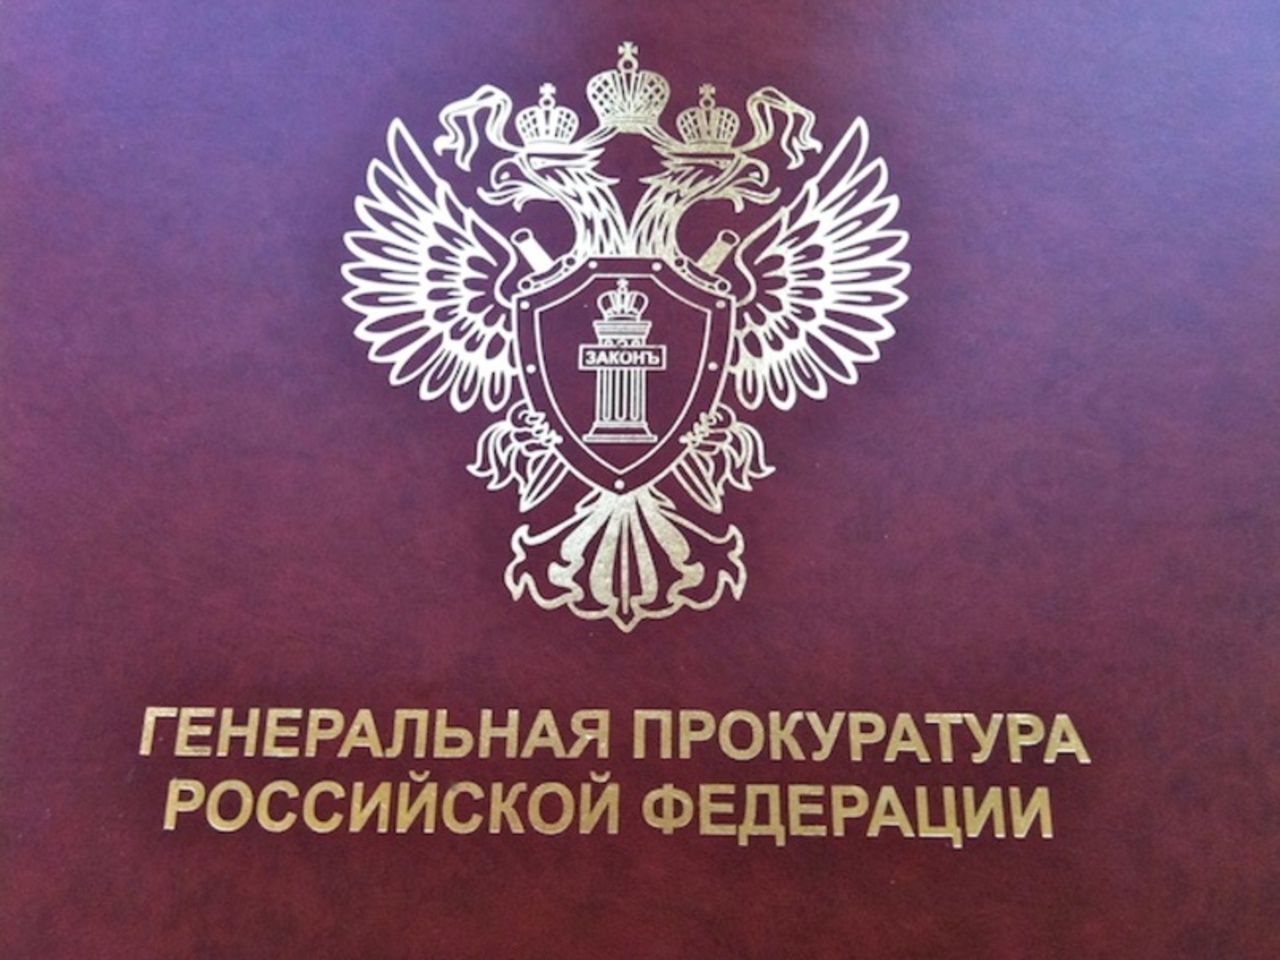 Генеральная прокуратура Российской Федерации логотип